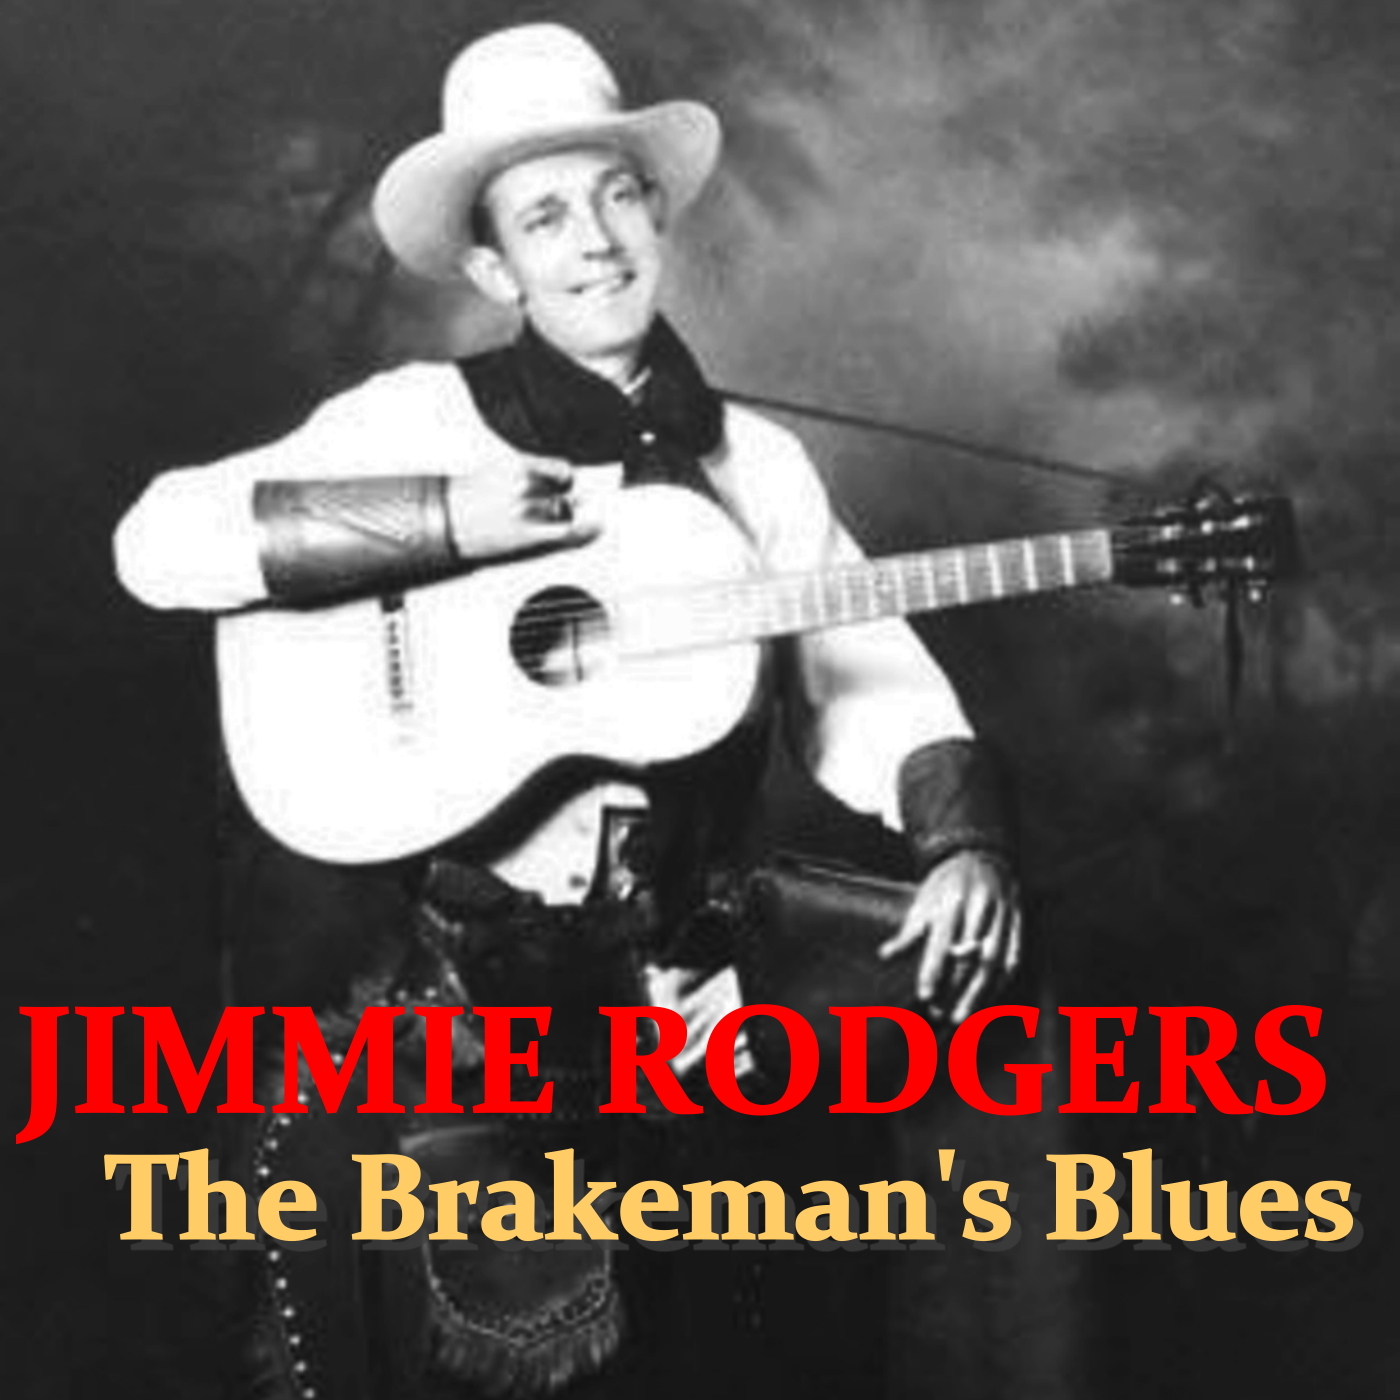 The Breakman's Blues